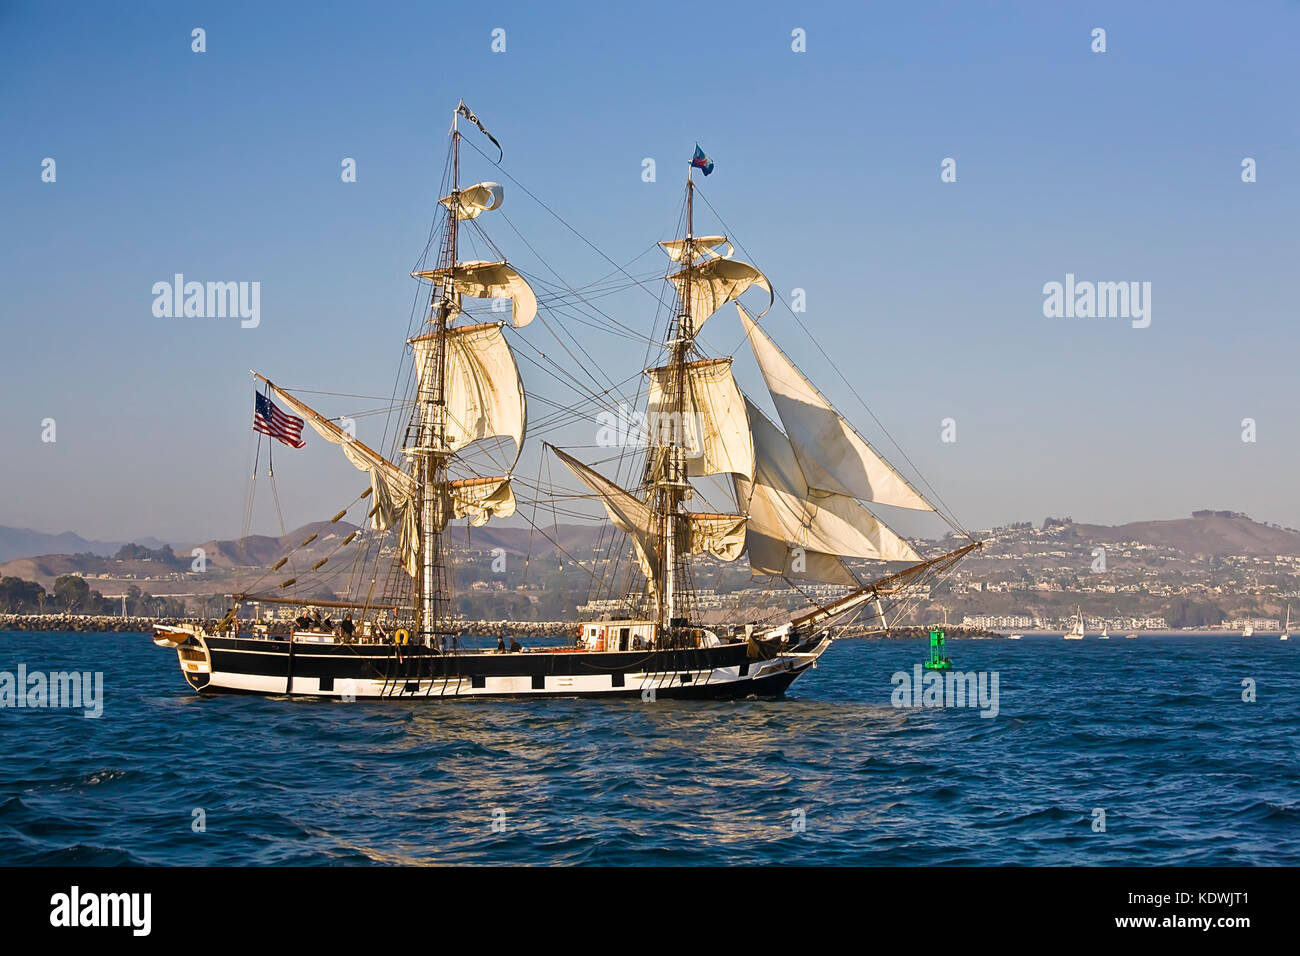 Tall Ship pilgrim Segel aus Dana Point, ca Usa. der Pilger eine Segelyacht brig war (180 Tonnen, 86,5 m lang) in den Kalifornien engagiert verstecken Handel Der Stockfoto